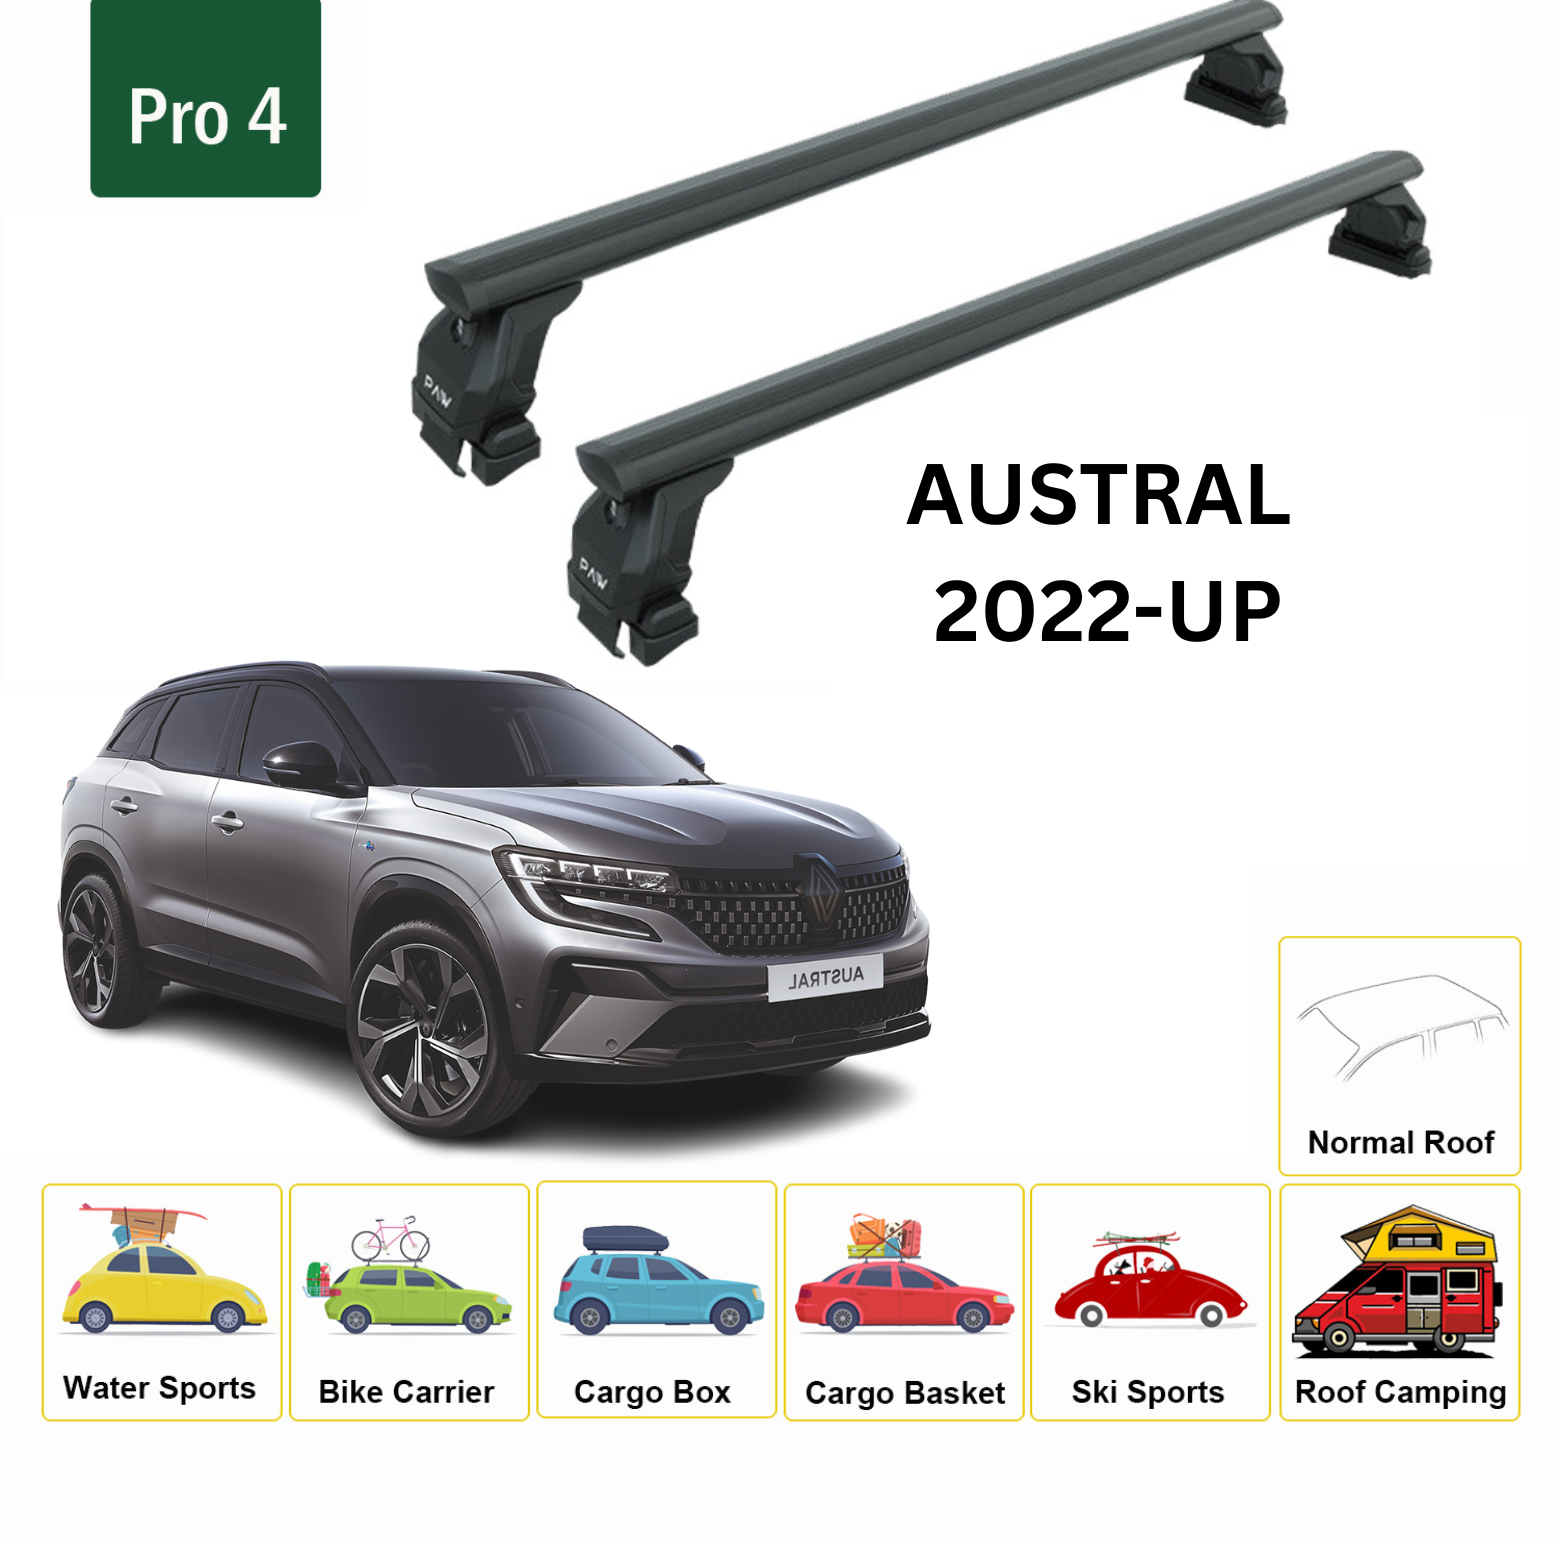 Für Renault Austral 2022-Up Dachträgersystem, Aluminium-Querstange, Metallhalterung, normales Dach, schwarz - 0